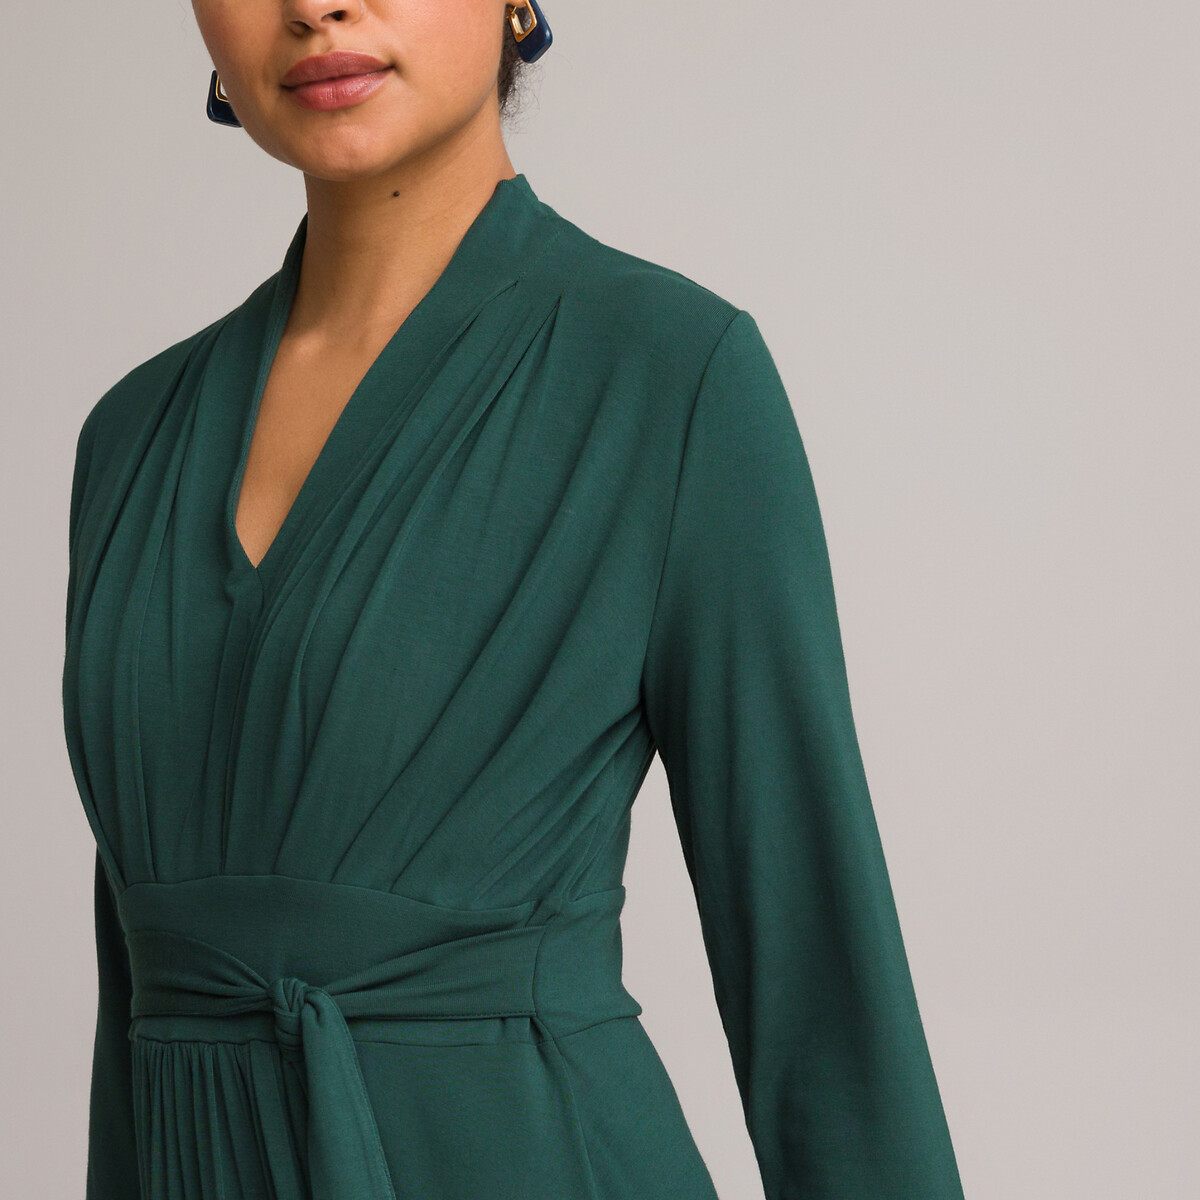 Платье ANNE WEYBURN Платье Расклешенное из струящегося трикотажа с рукавами 34 54 зеленый, размер 54 - фото 3